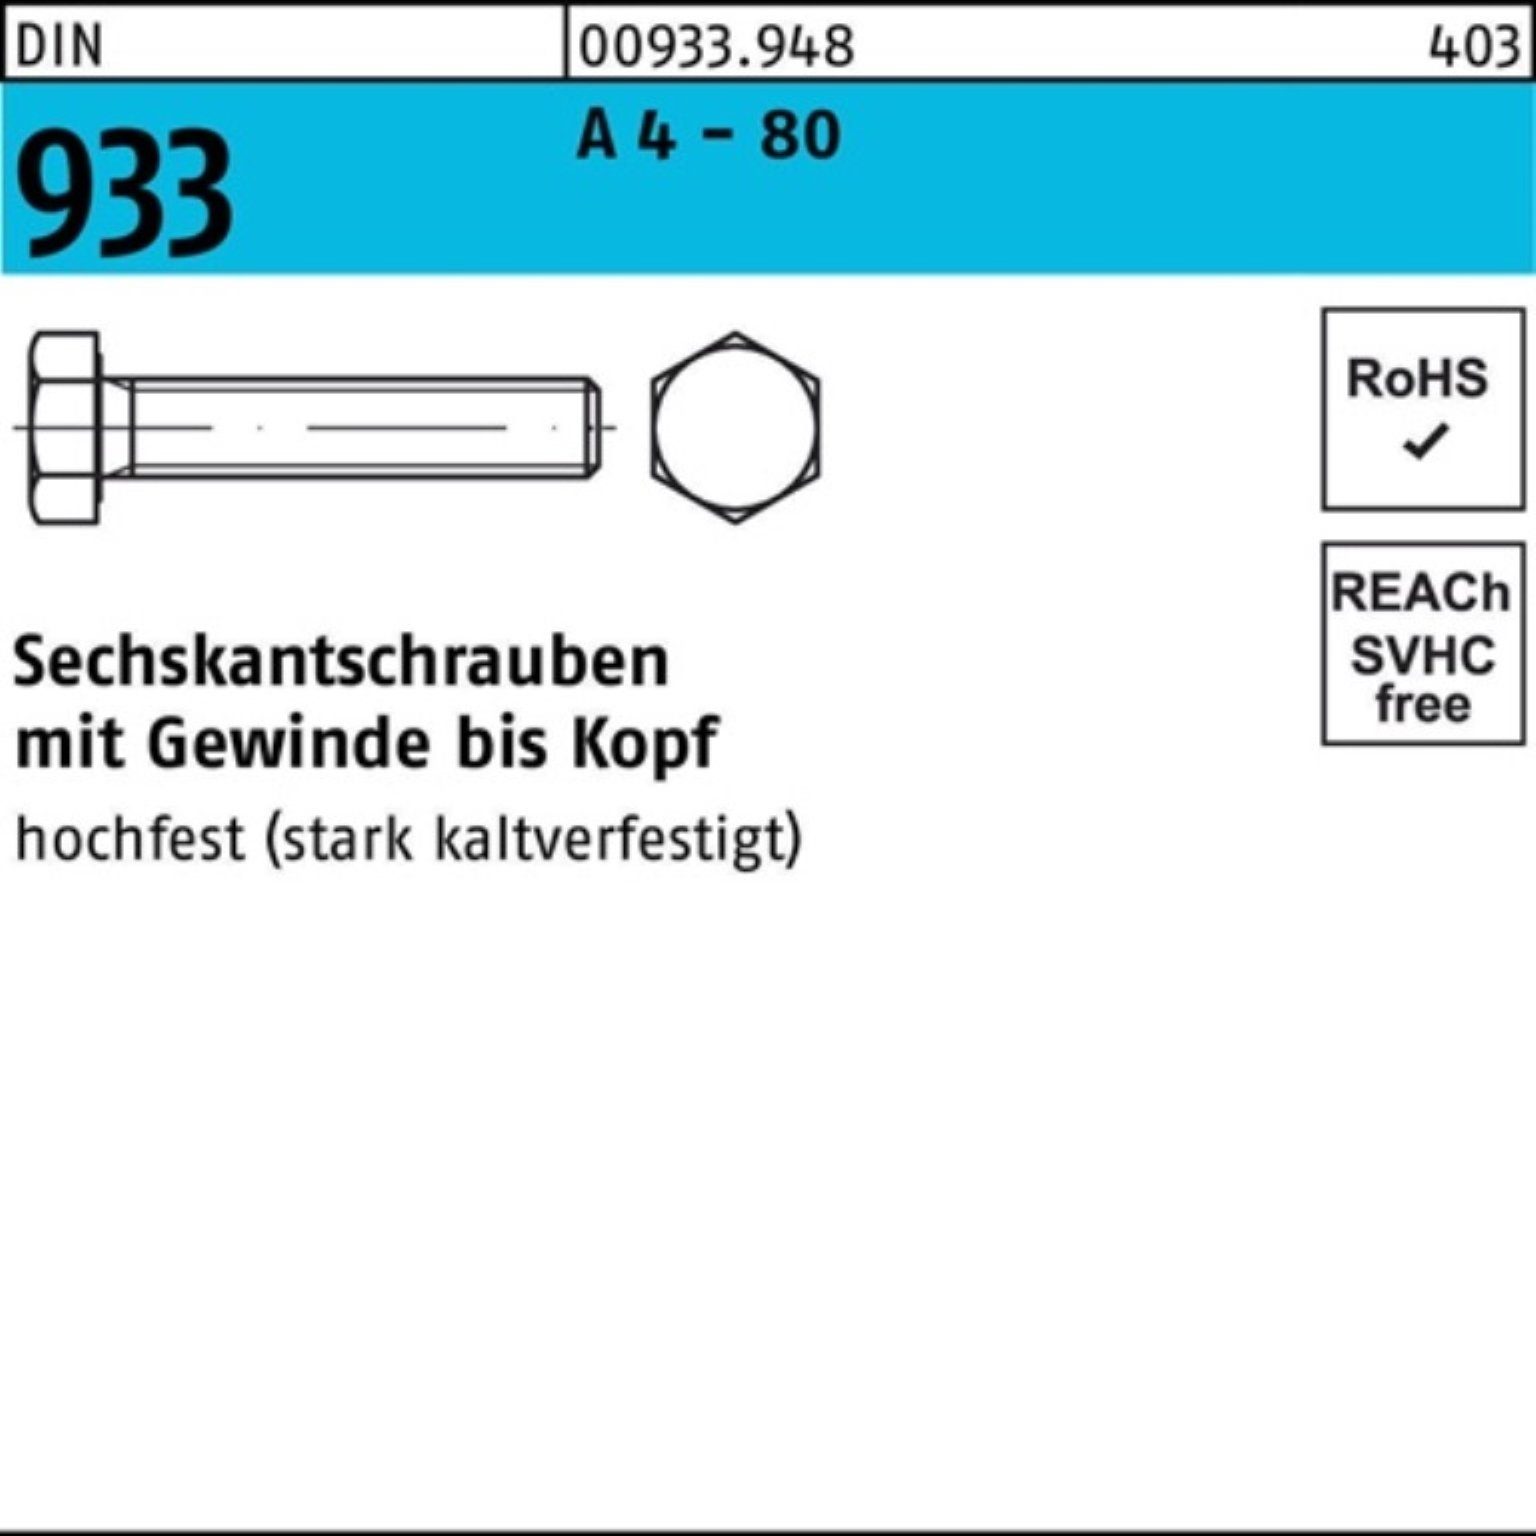 Reyher Sechskantschraube 100er Pack Sechskantschraube DIN 933 VG M10x 160 A 4 - 80 1 Stück DIN